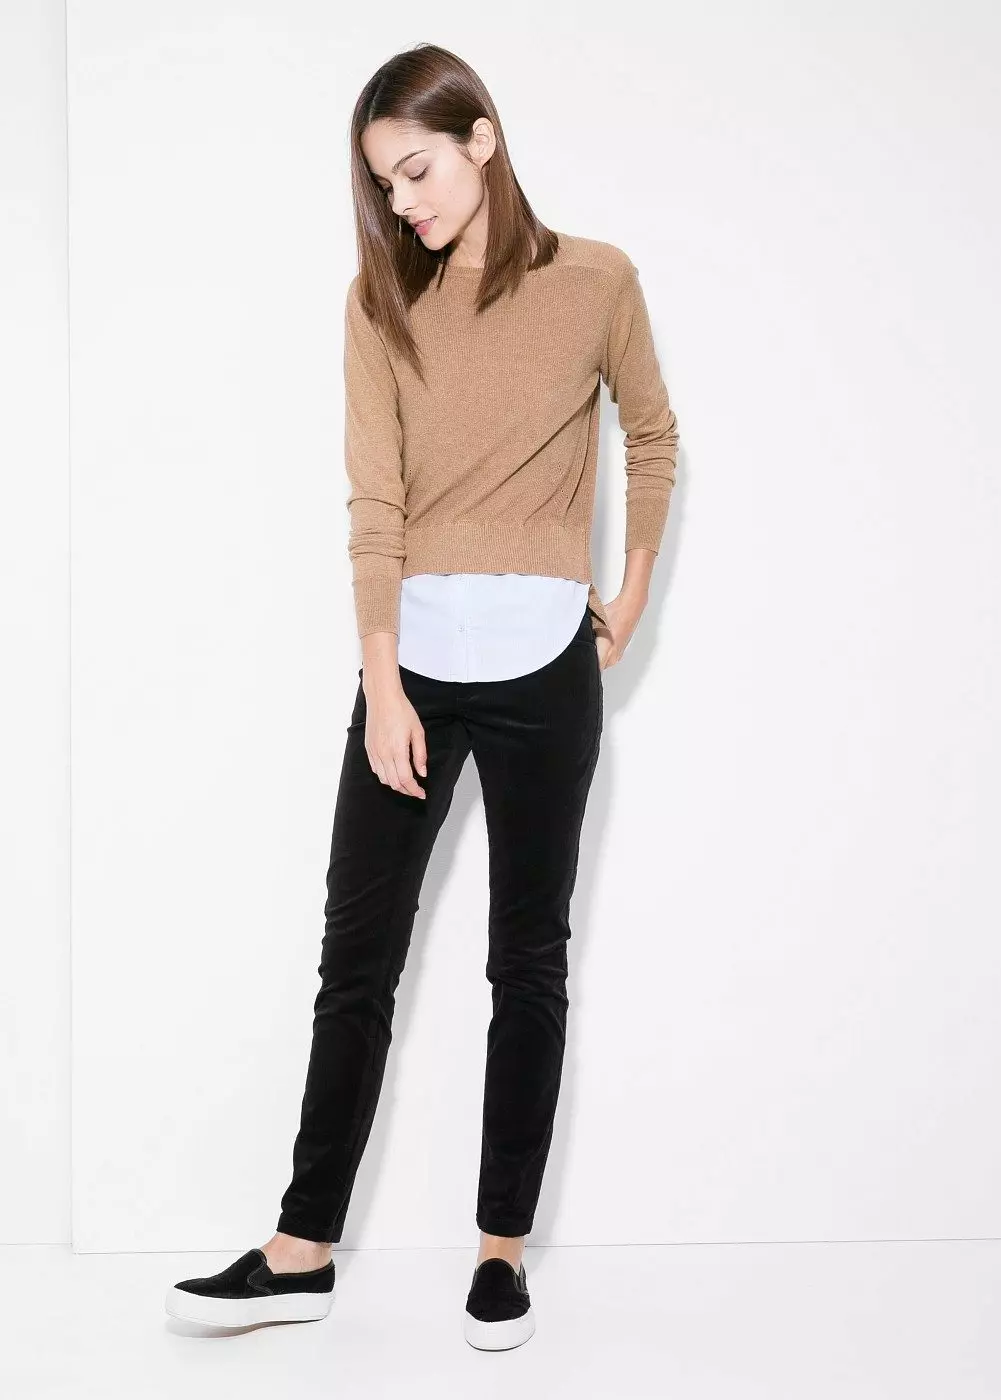 Modne hlače 2021: Ženski elegantni modeli, modni trendovi 917_100